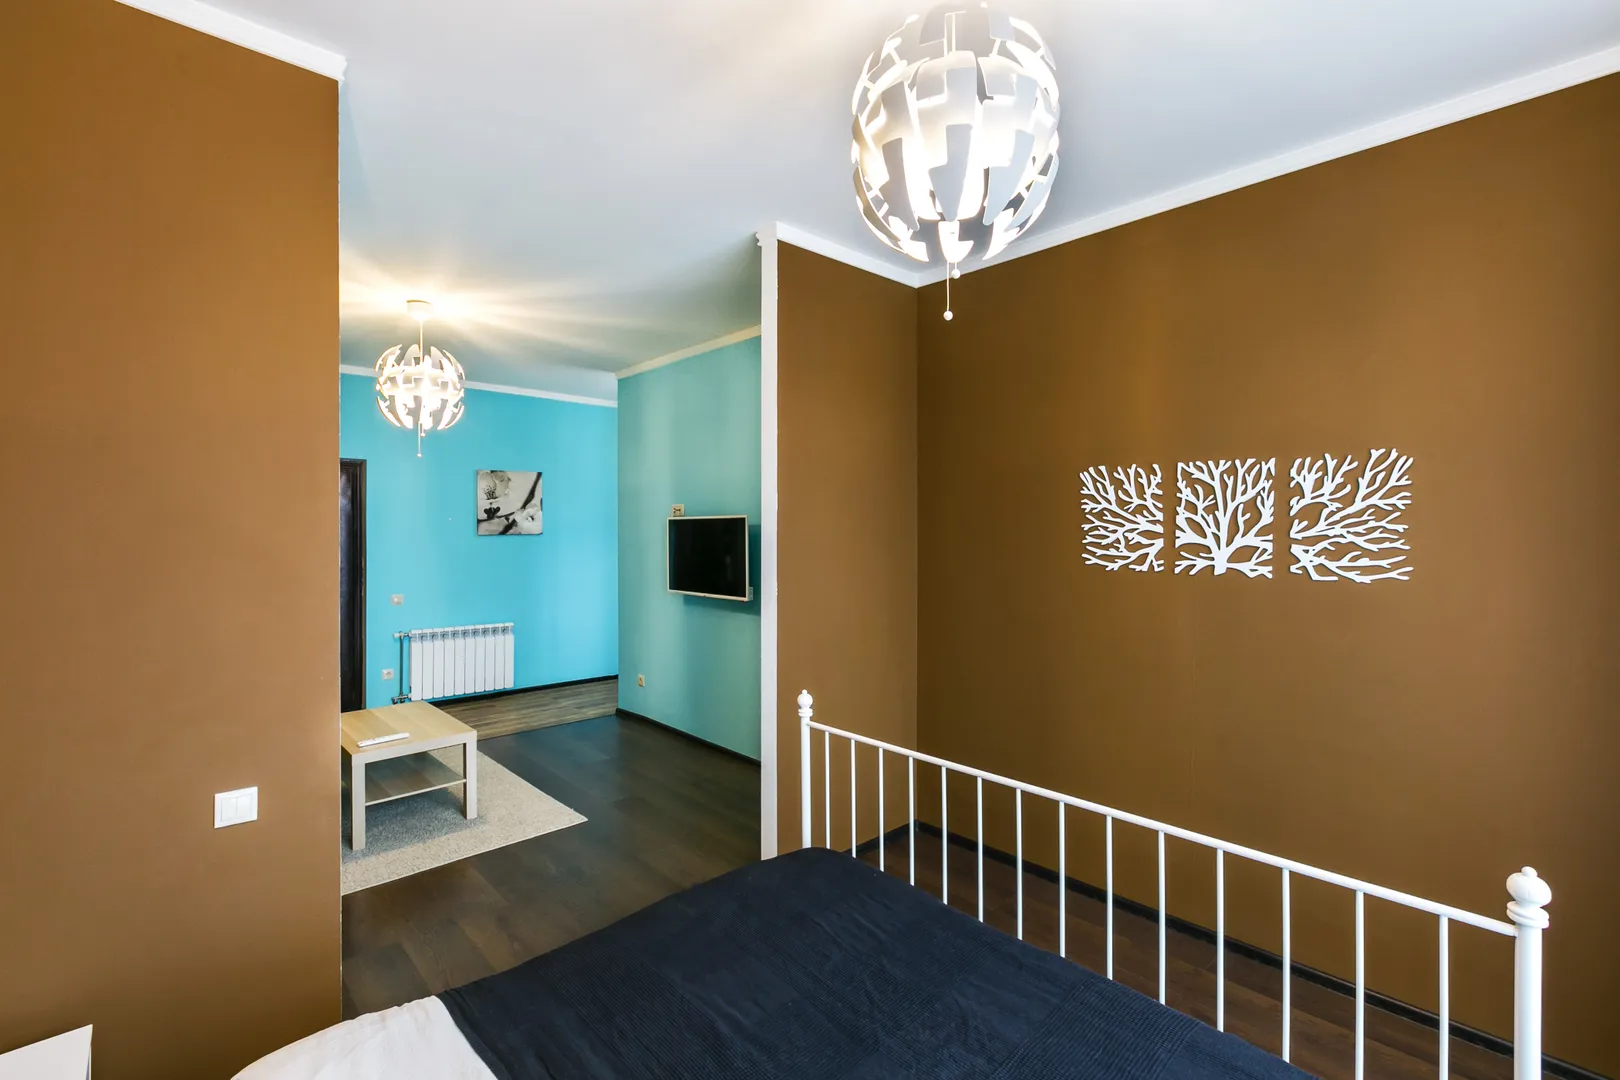 Спальная зона в белых тонах на фоне стен шоколадного оттенка, одну из которых украшает панно авторской работы.